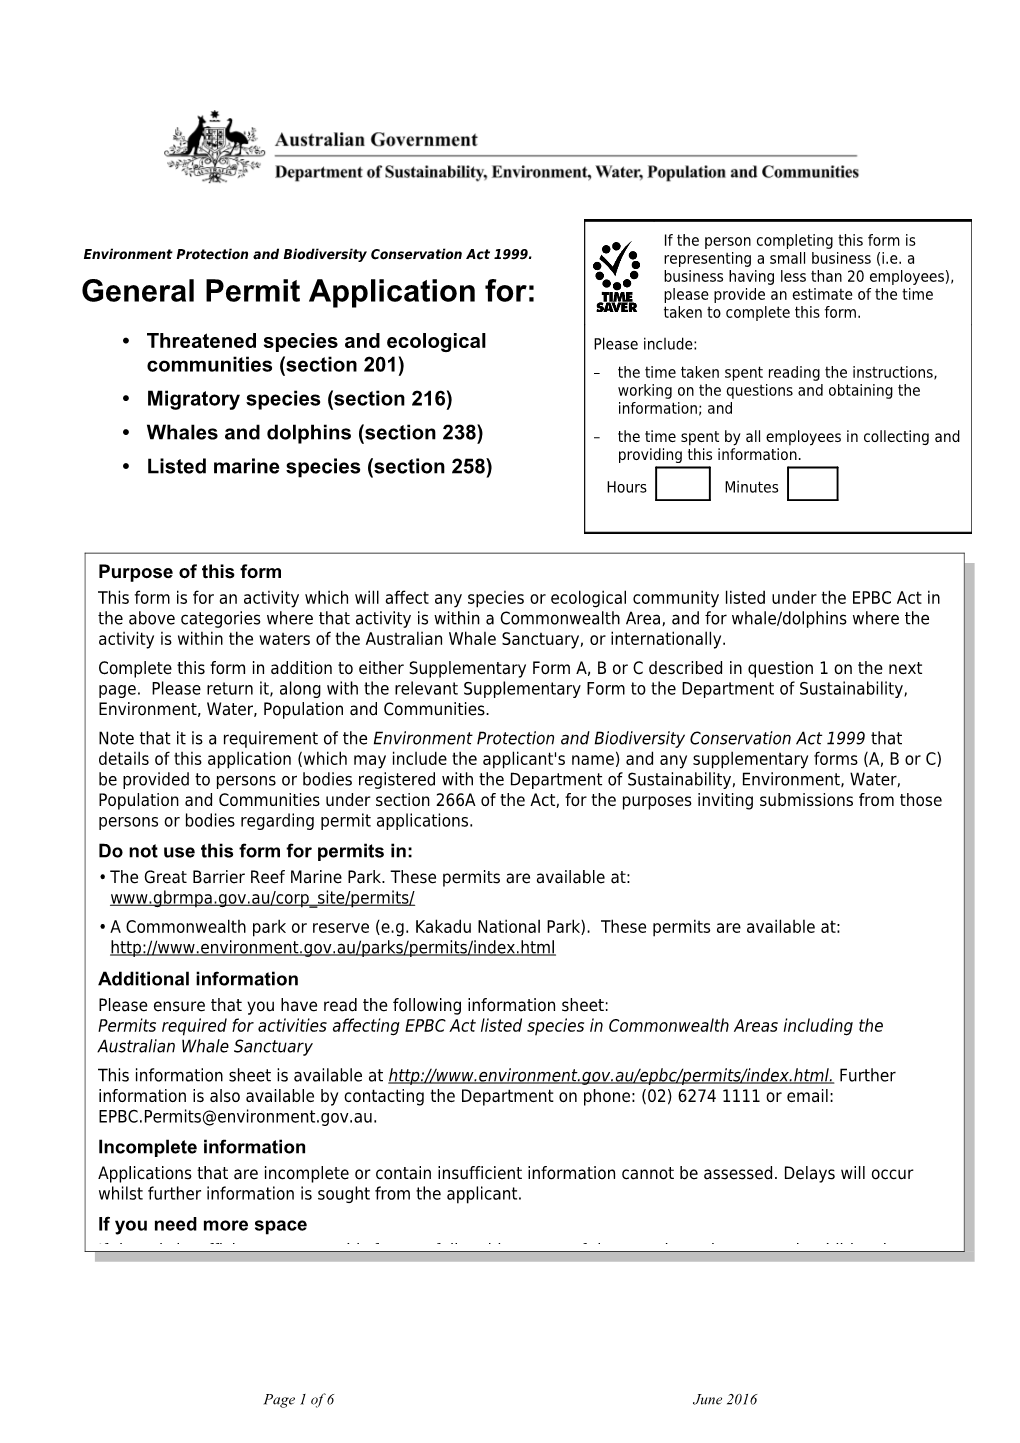 E2012-0113 General Permit Application